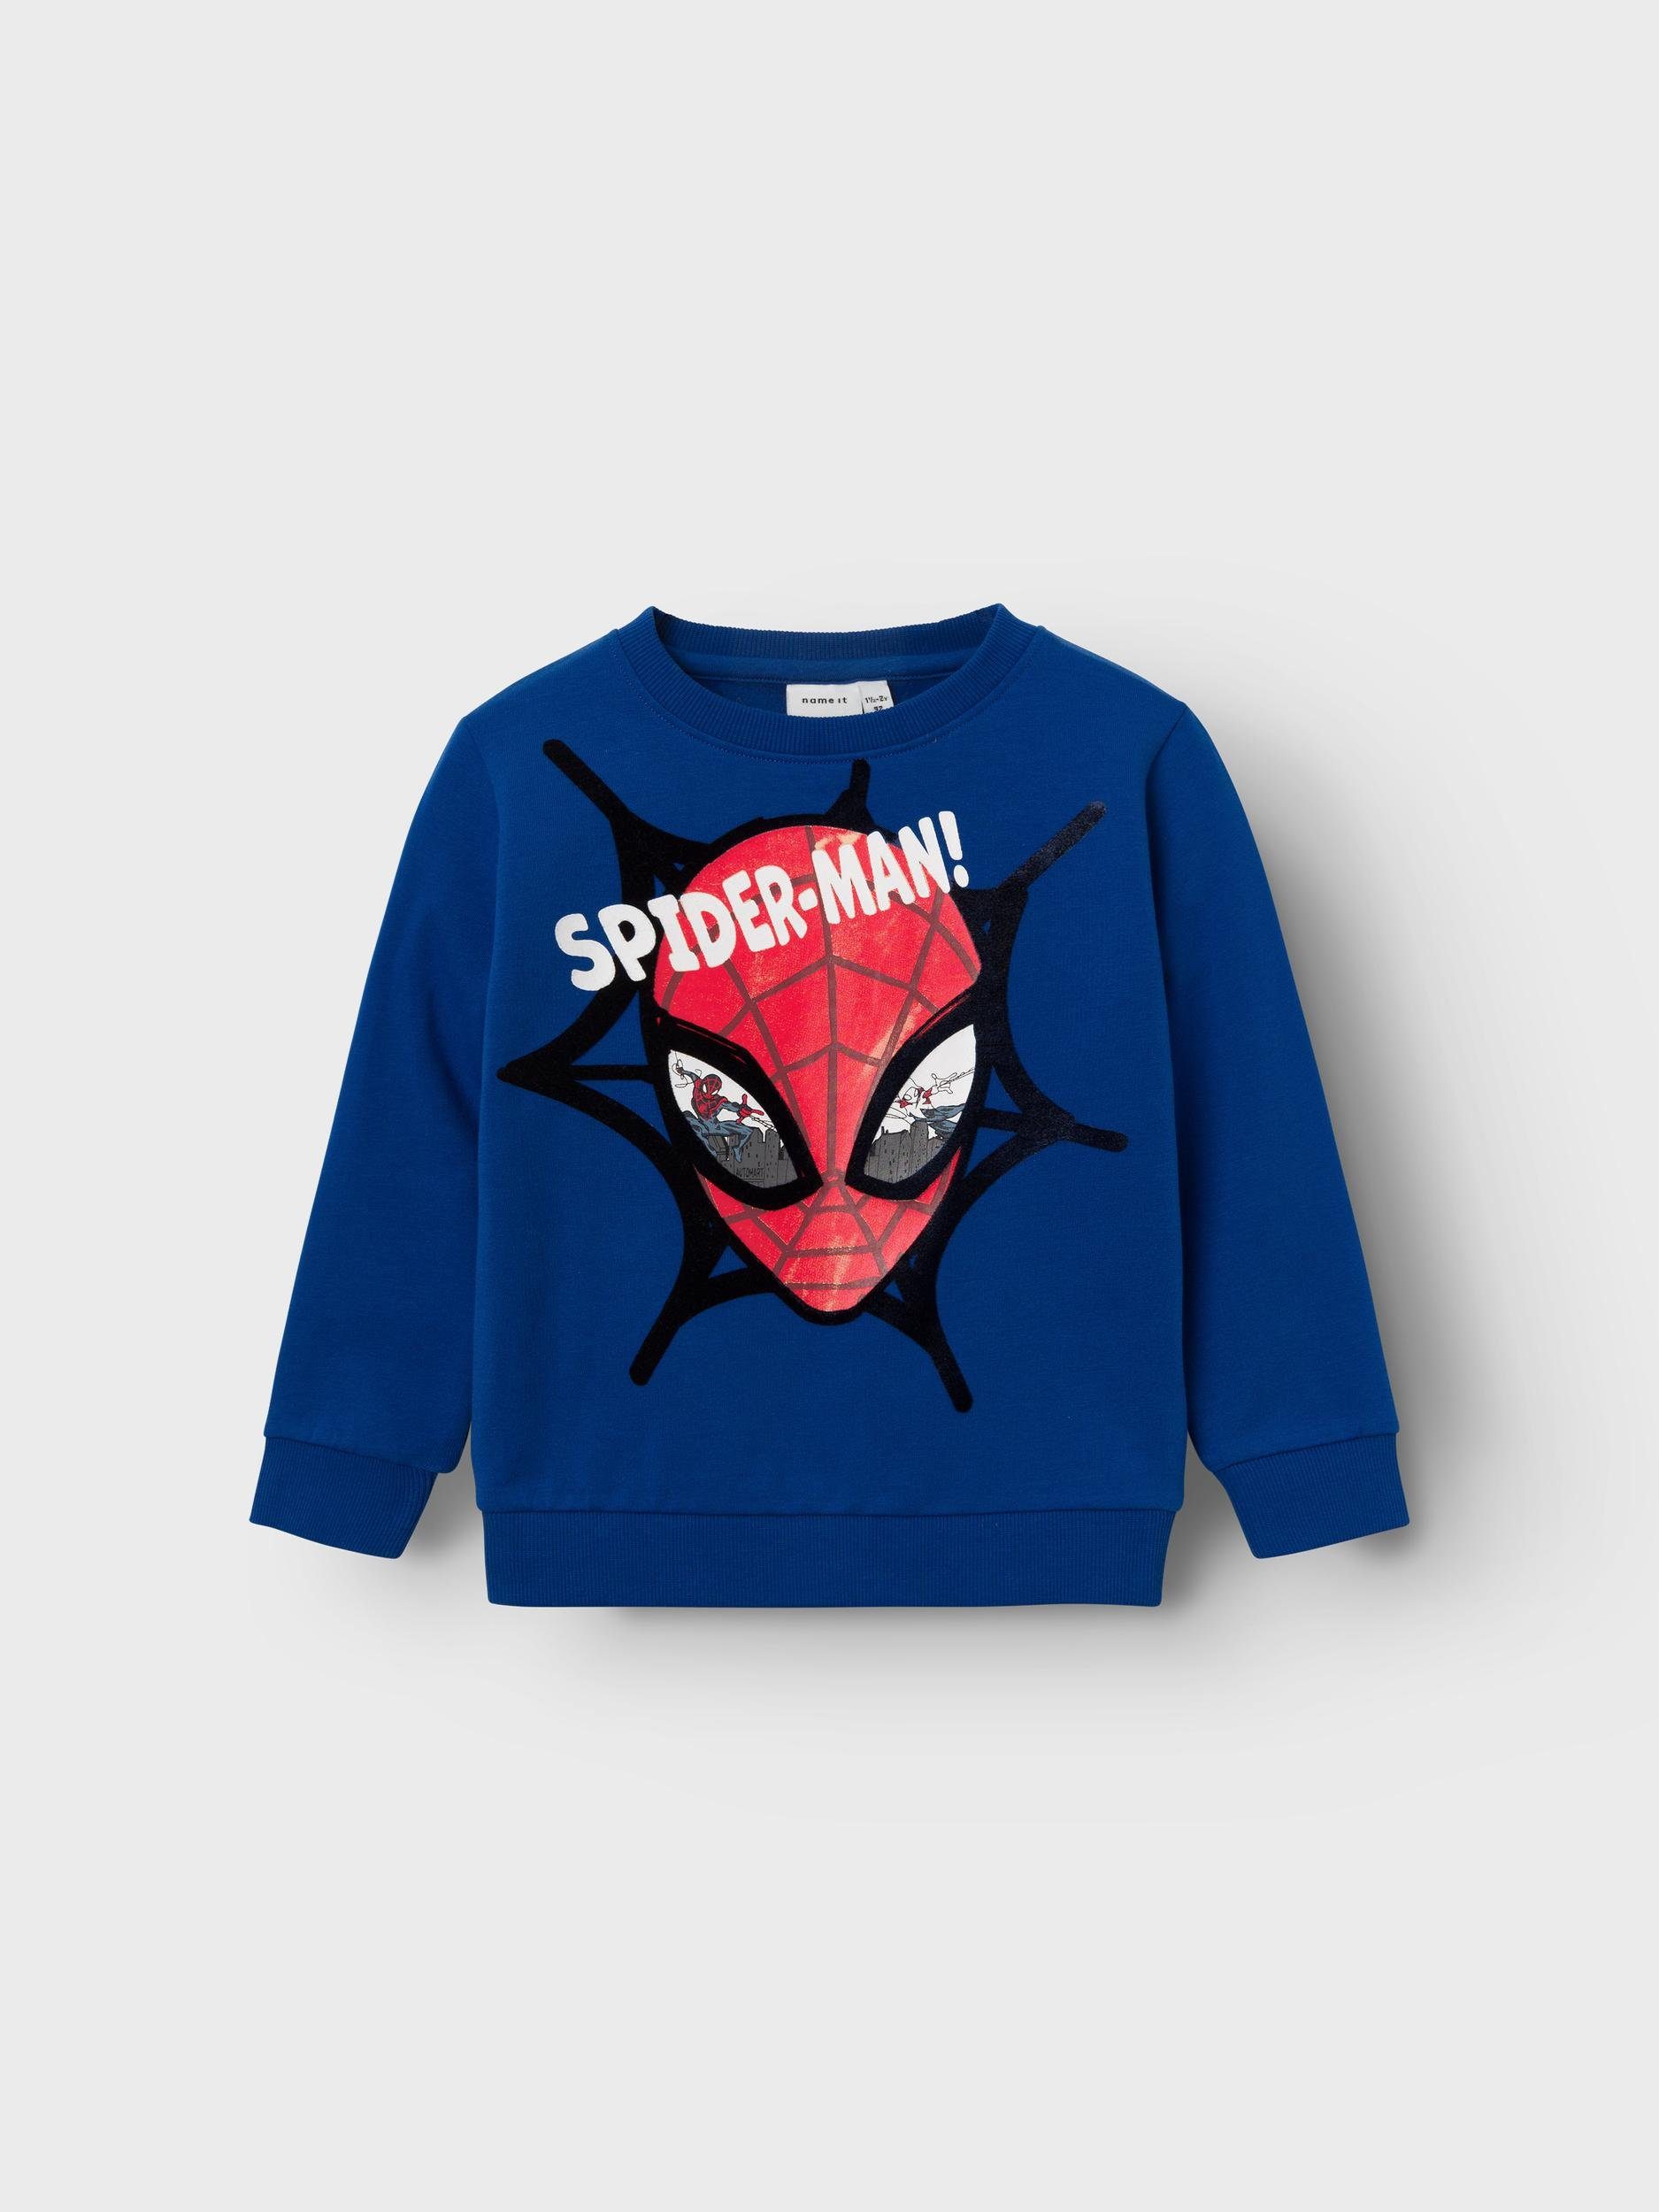 It SPIDERMAN NMMSVENDE Name MAR BRU SWEAT Sweatshirt